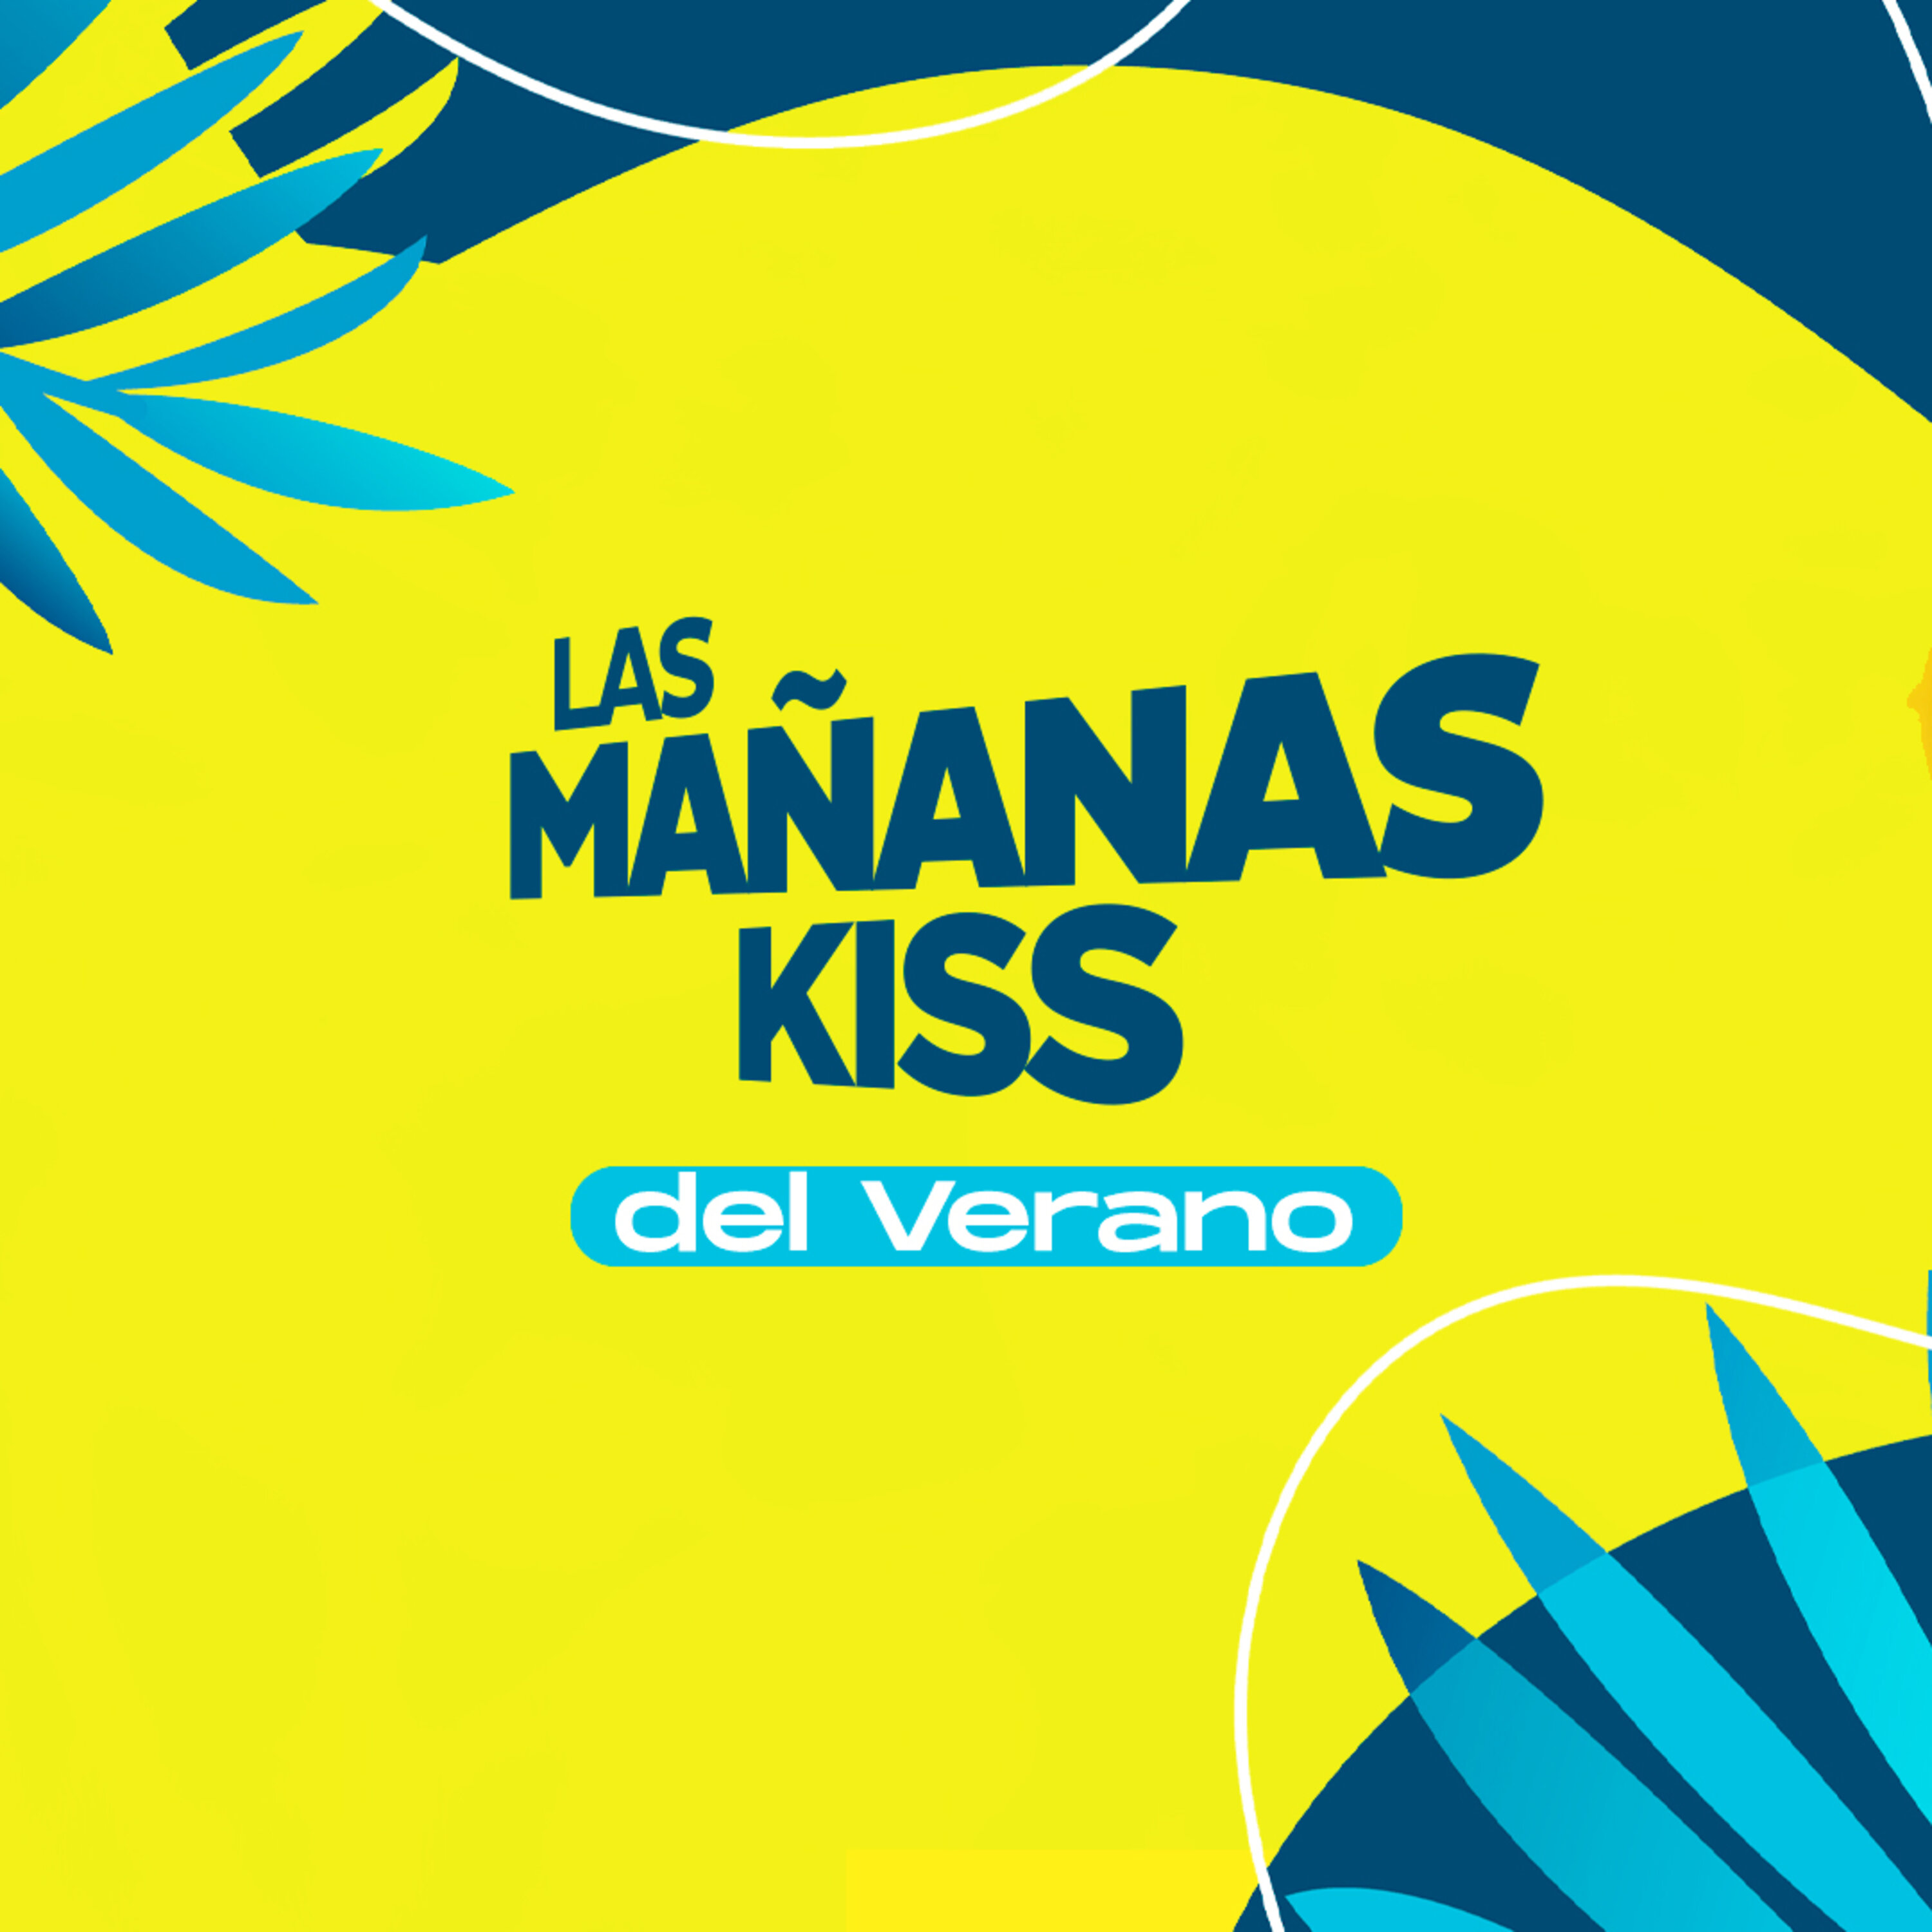 Las Mañanas KISS del Verano (16/08/2022 - 08-09h)